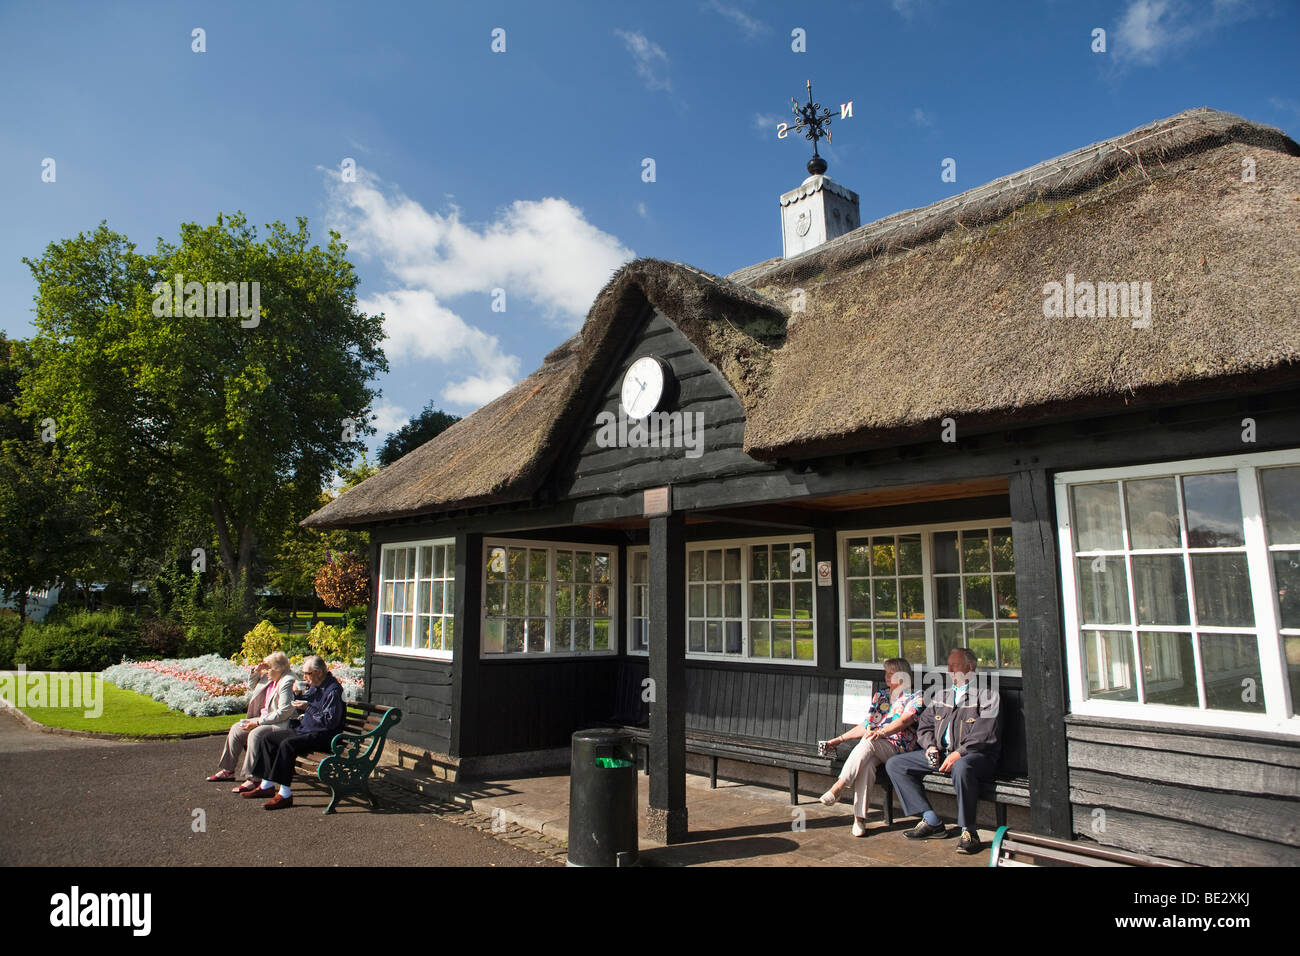 Royaume-uni, Angleterre, Staffordshire, Stafford, Victoria Park, bols pavilion retraités assis à regarder le soleil en jeu Banque D'Images